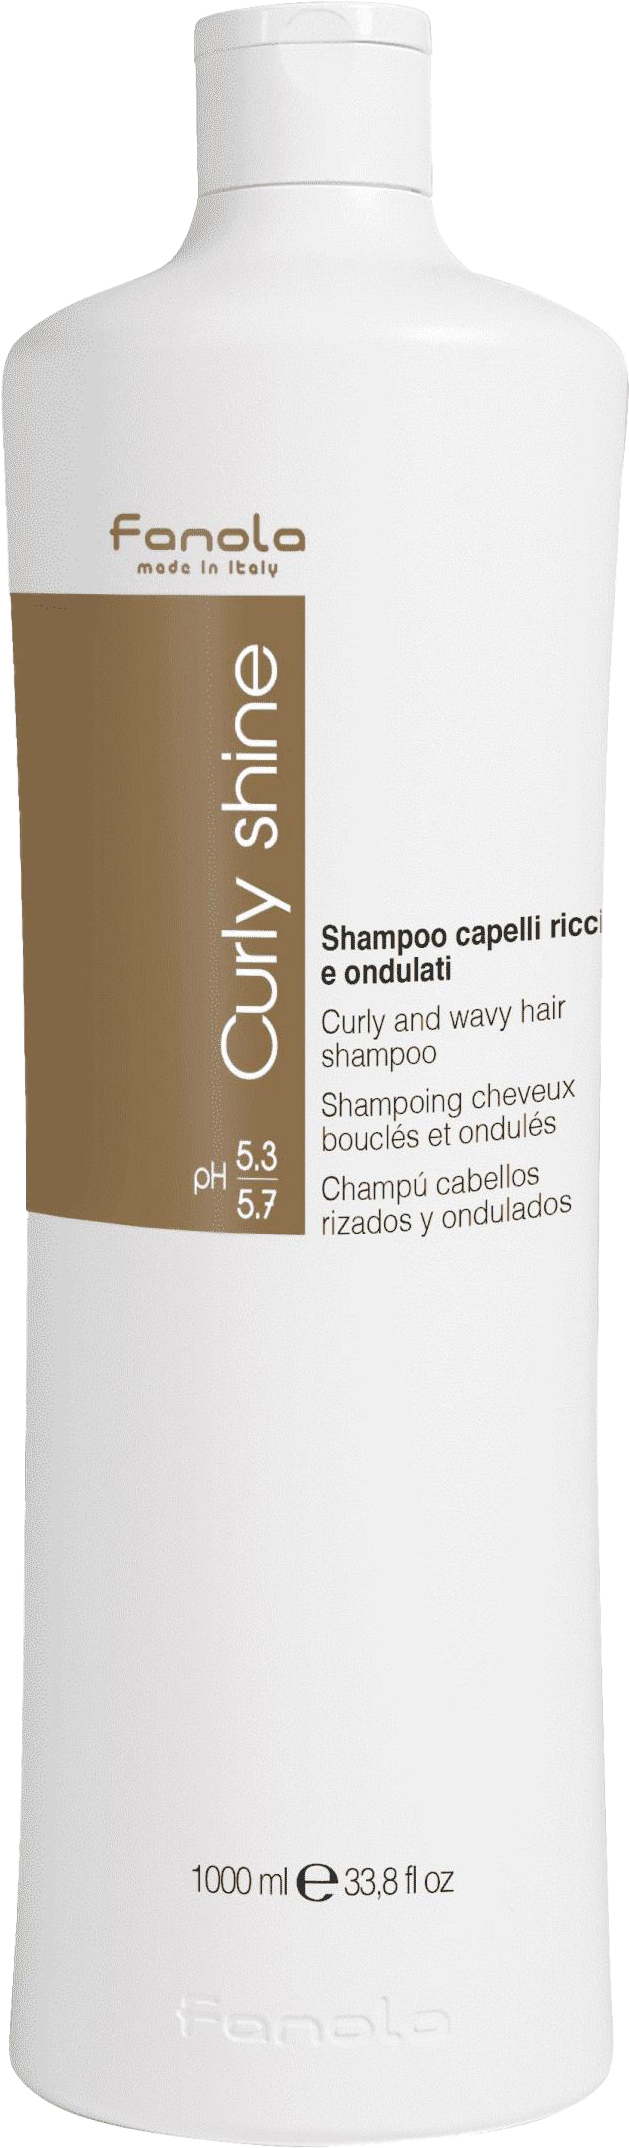 fanola curly shine szampon do włosów kręconych 1000ml